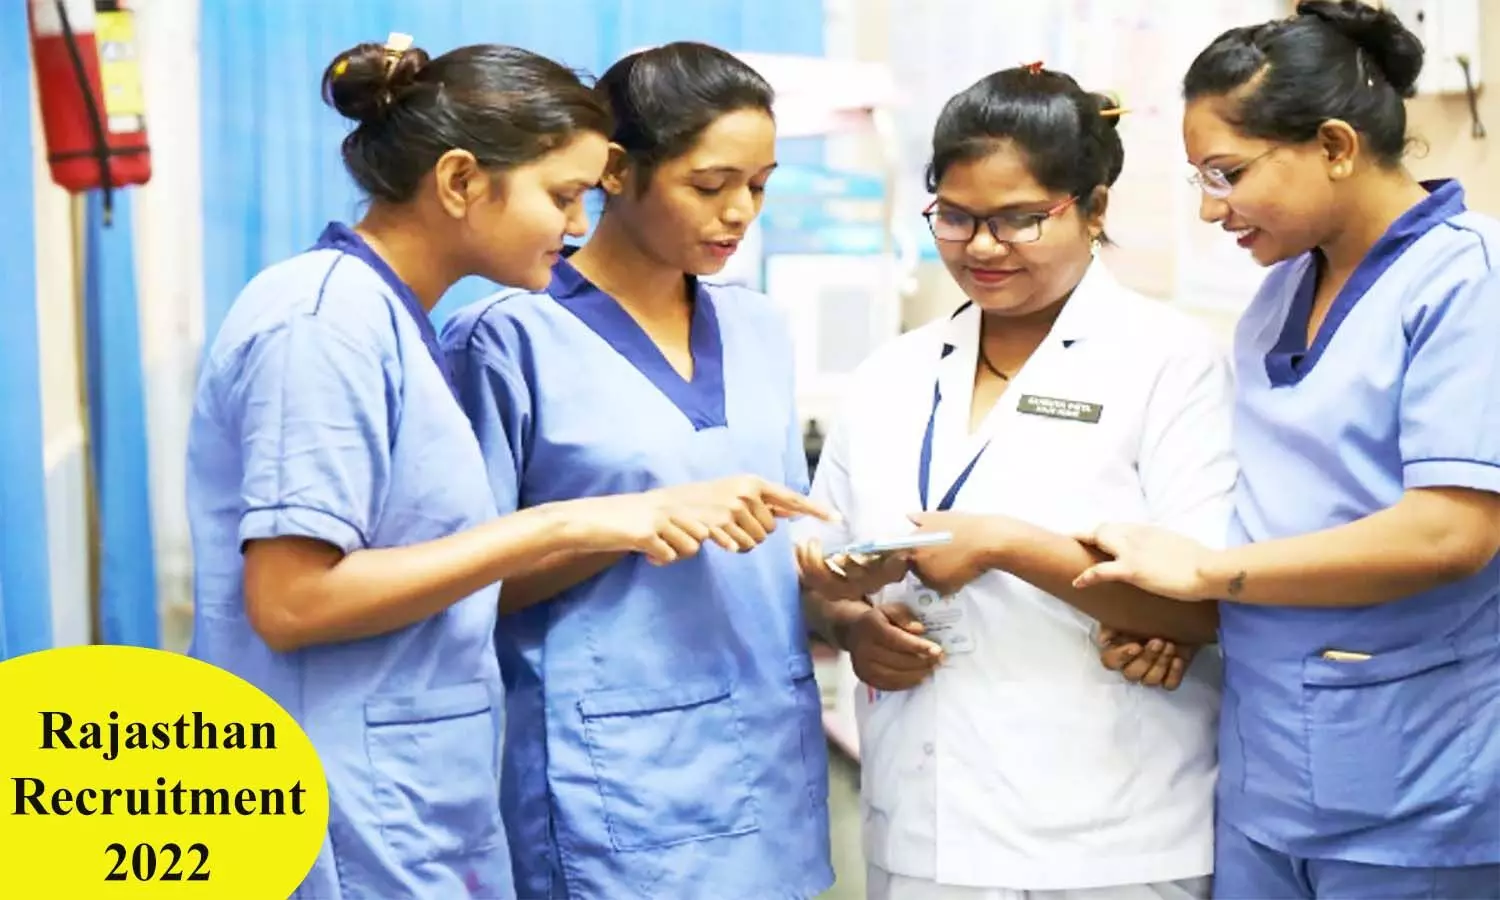 Rajasthan Recruitment 2022: स्वास्थ्य विभाग में नर्सिंग ऑफिसर और फार्मासिस्ट पदों पर निकली वैकेंसी